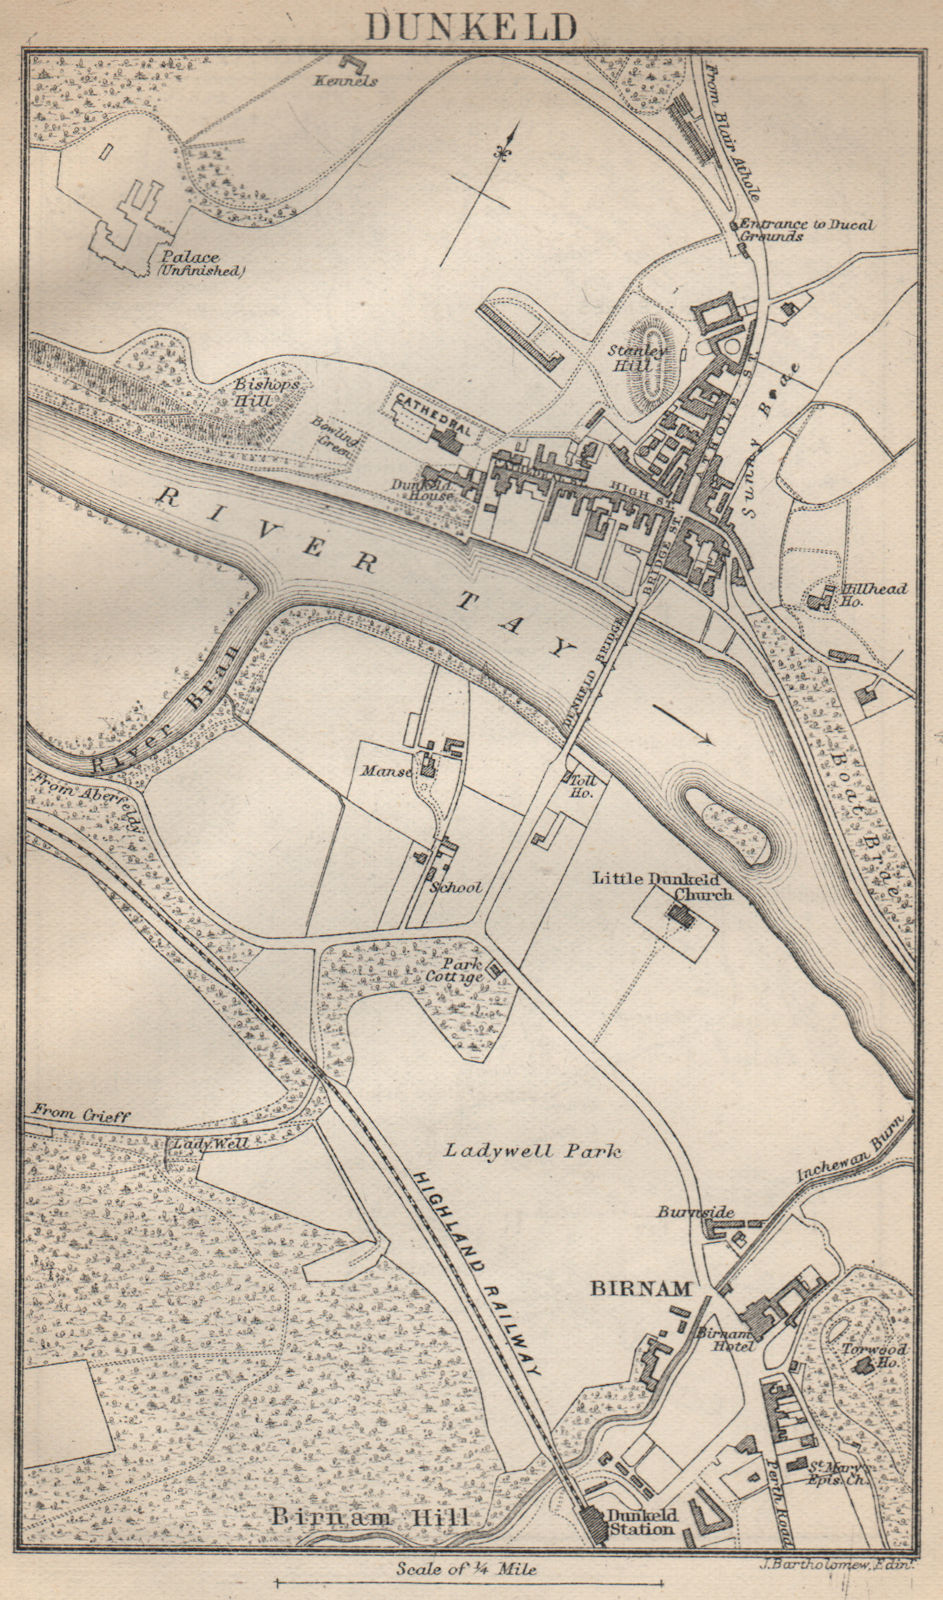 Associate Product DUNKELD antique town plan. Birnam. Scotland 1886 old map chart